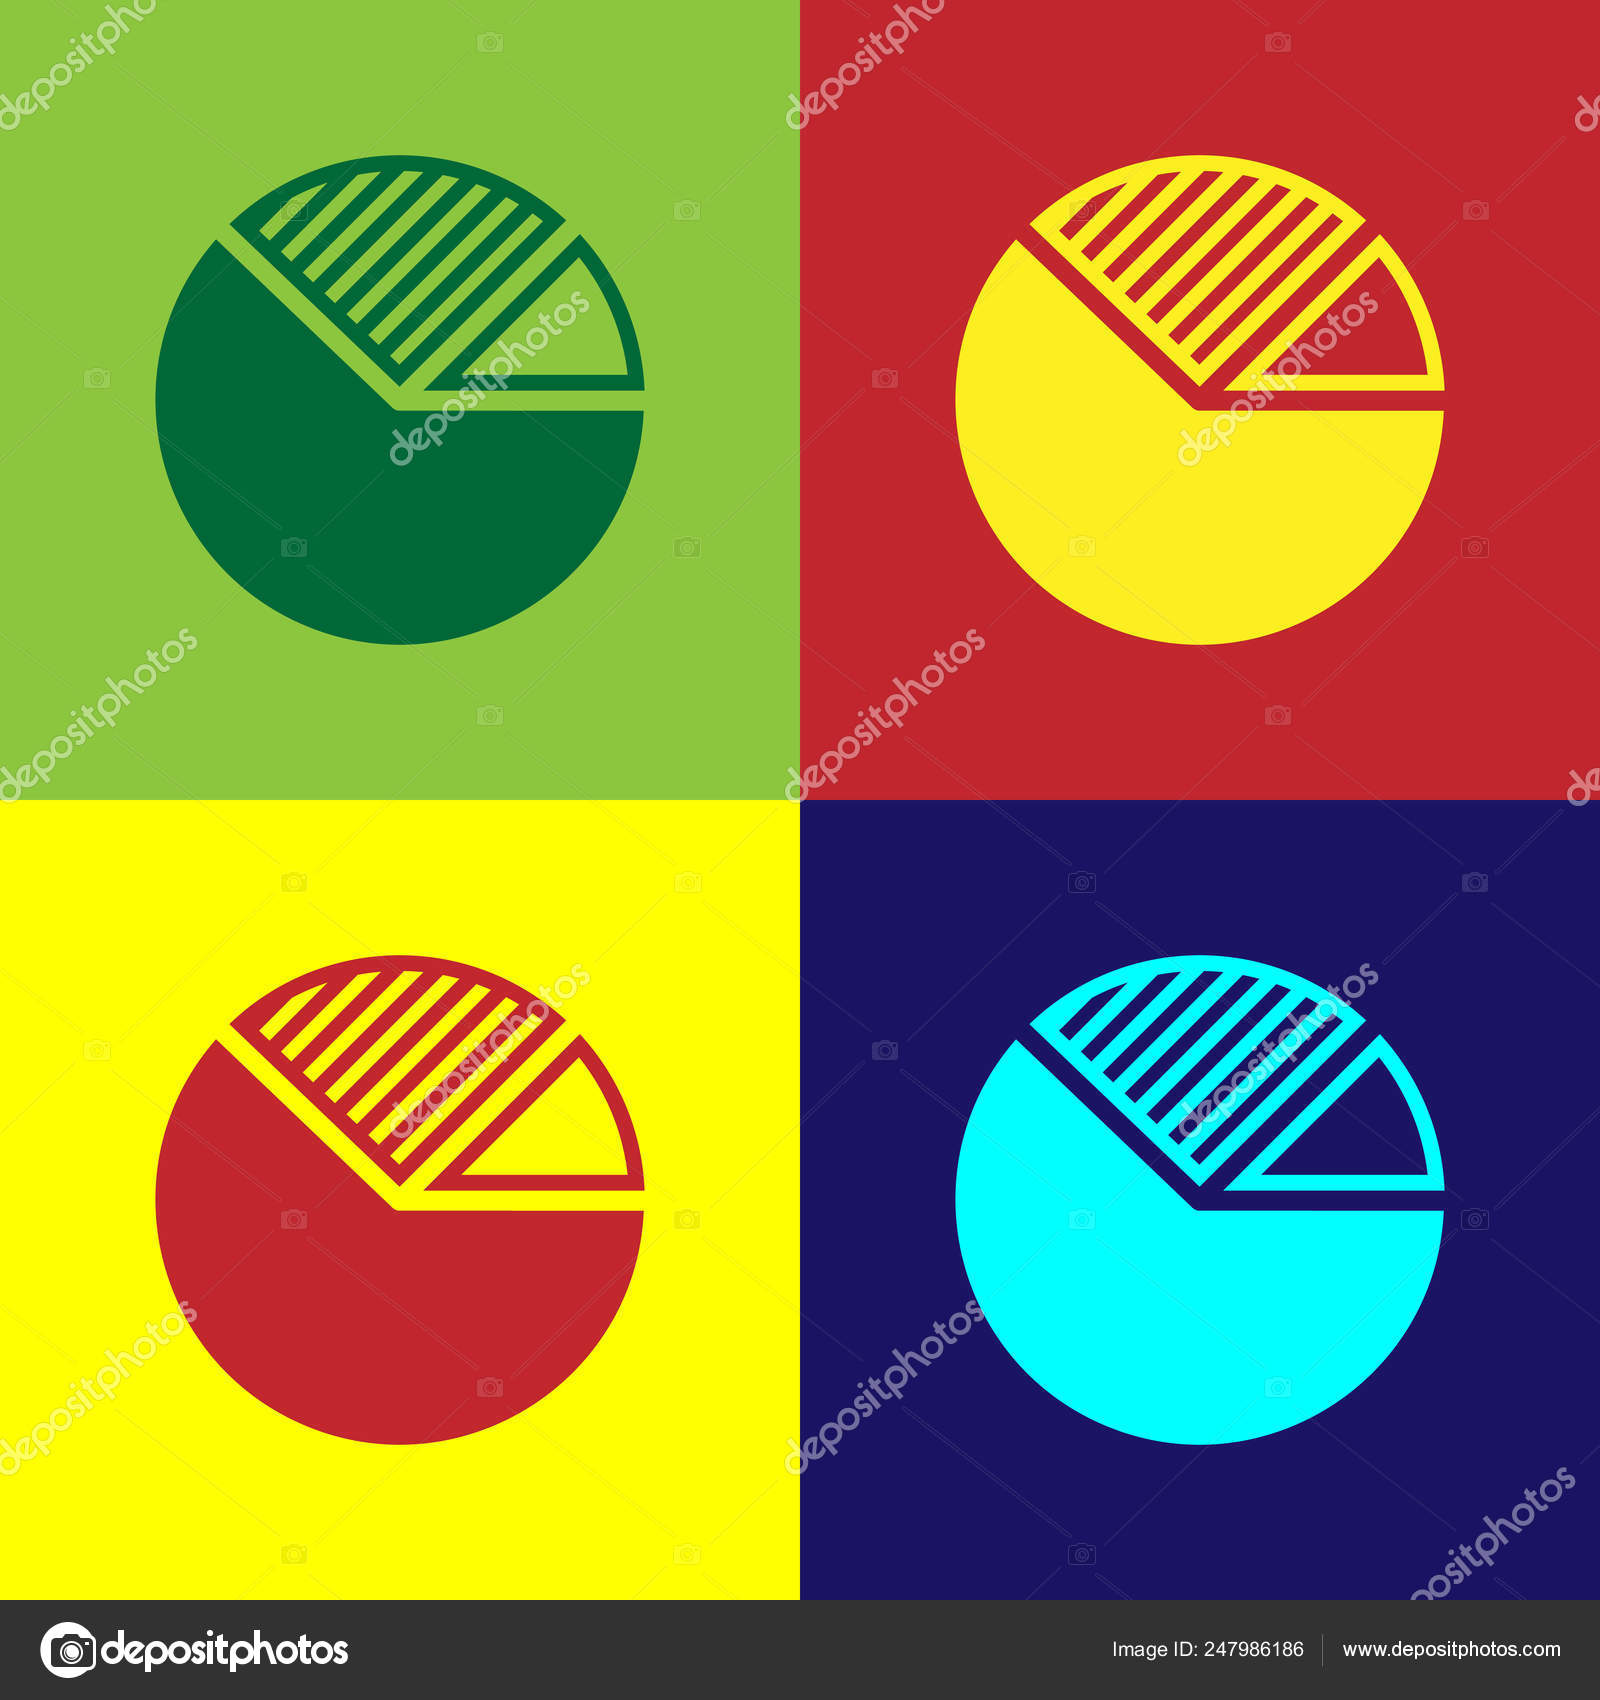 Favorite Color Pie Chart